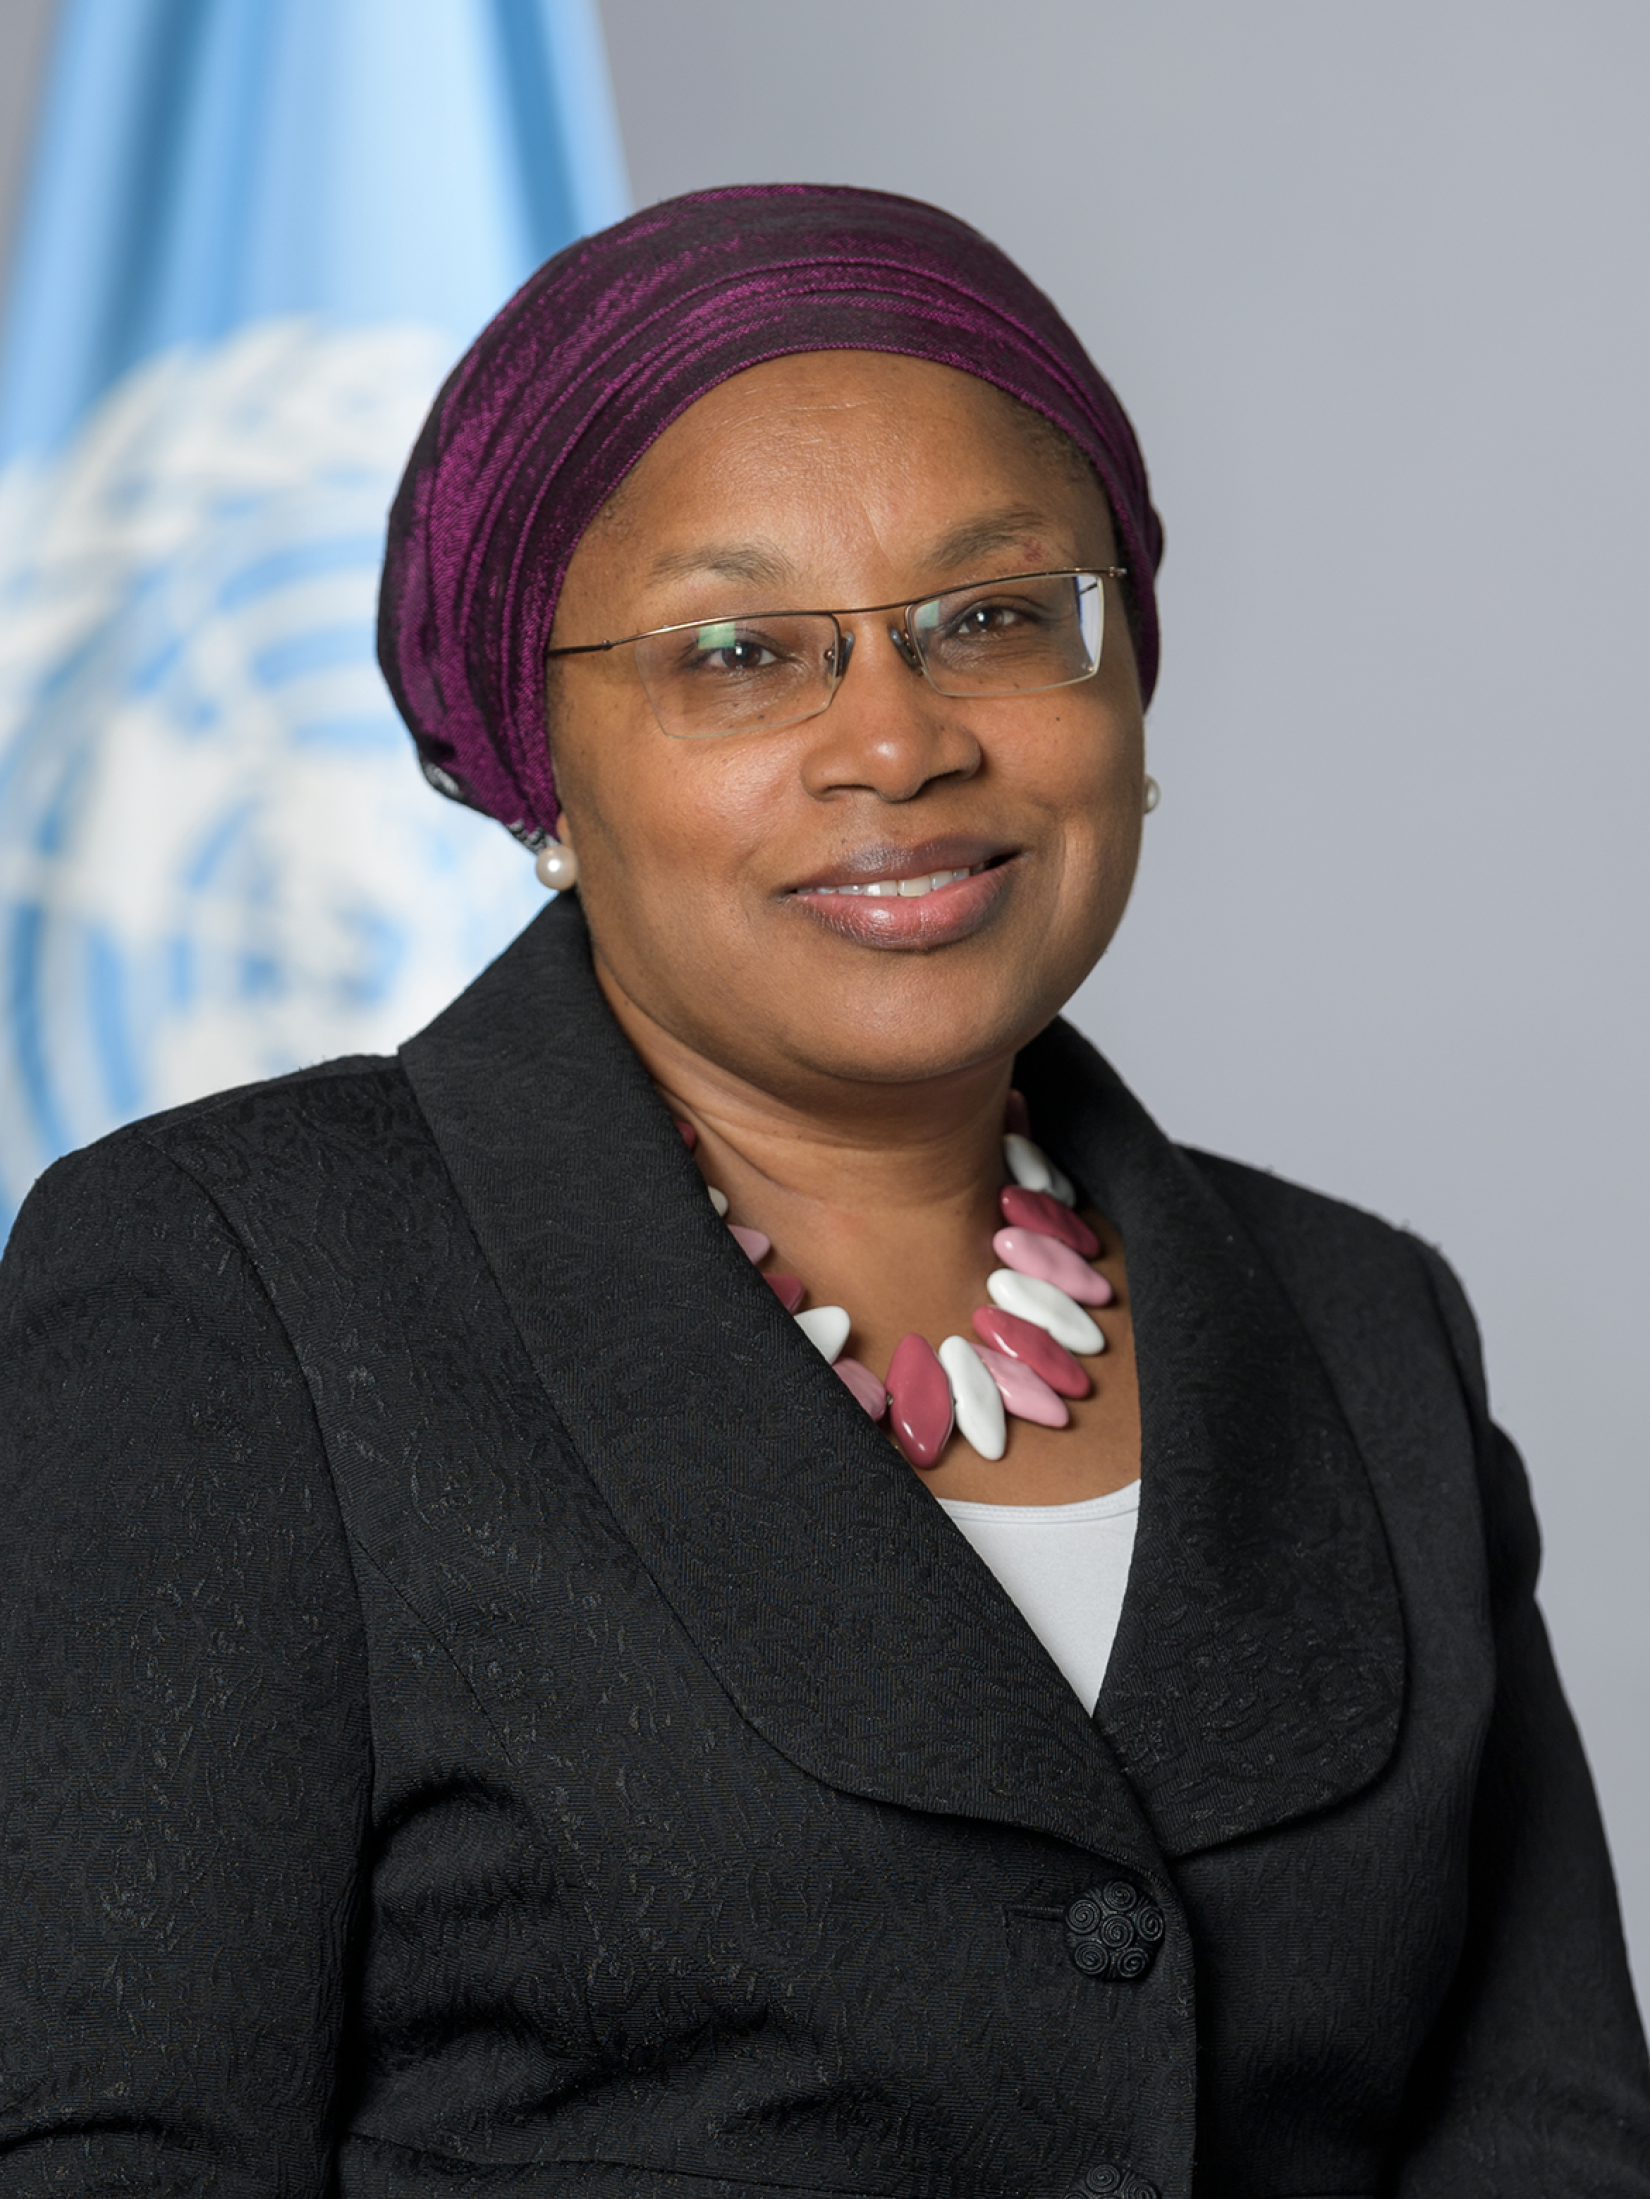 A Sub-secretária-geral das Nações Unidas e Assessora Especial para Prevenção do Genocídio, Alice Wairimu Nderitu